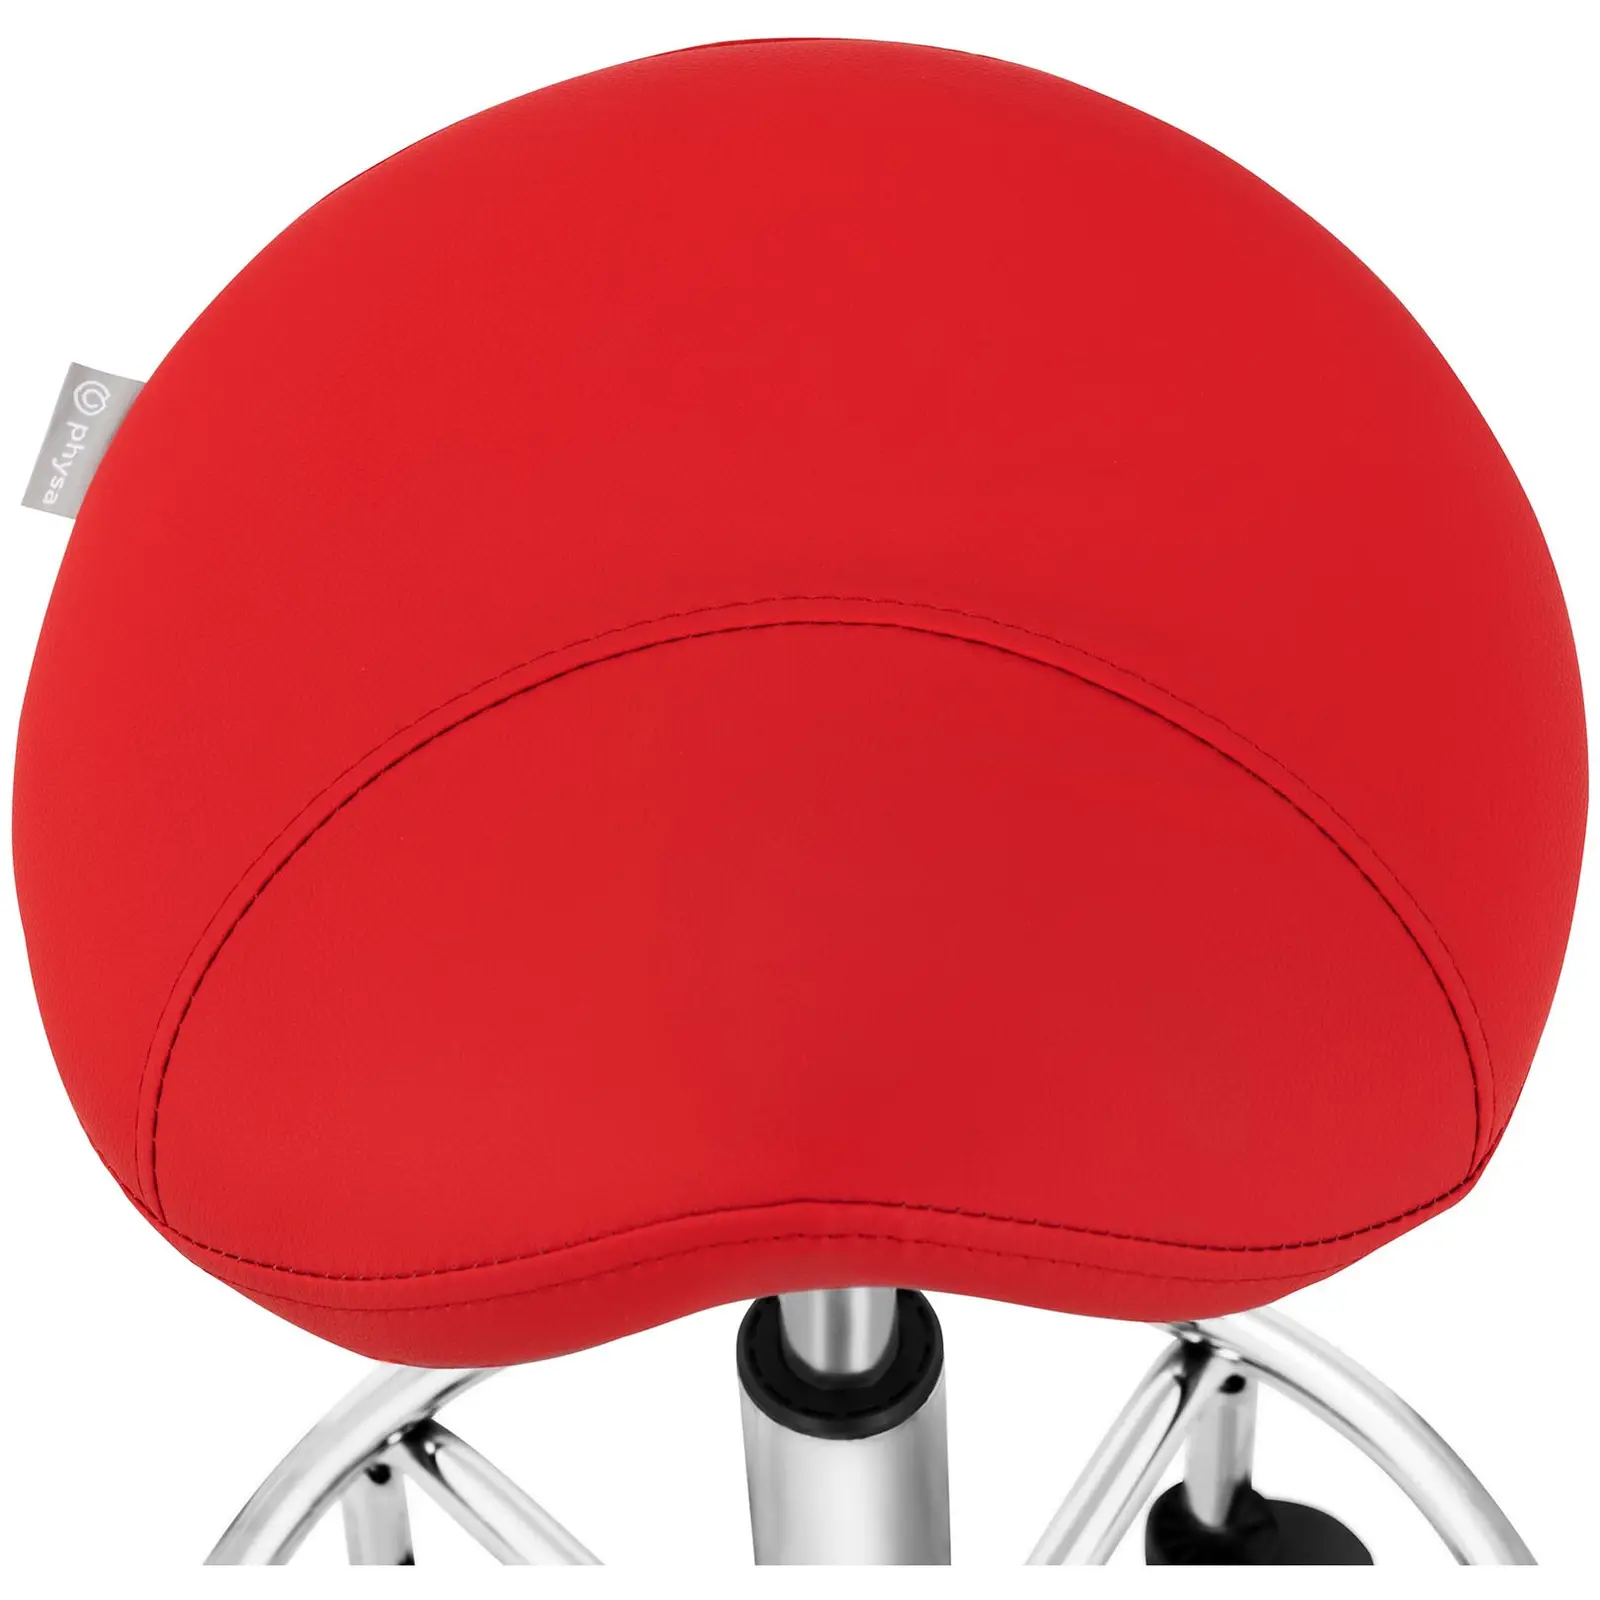 Krzesło siodłowe - 570 - 690 mm - 150 kg - czerwone